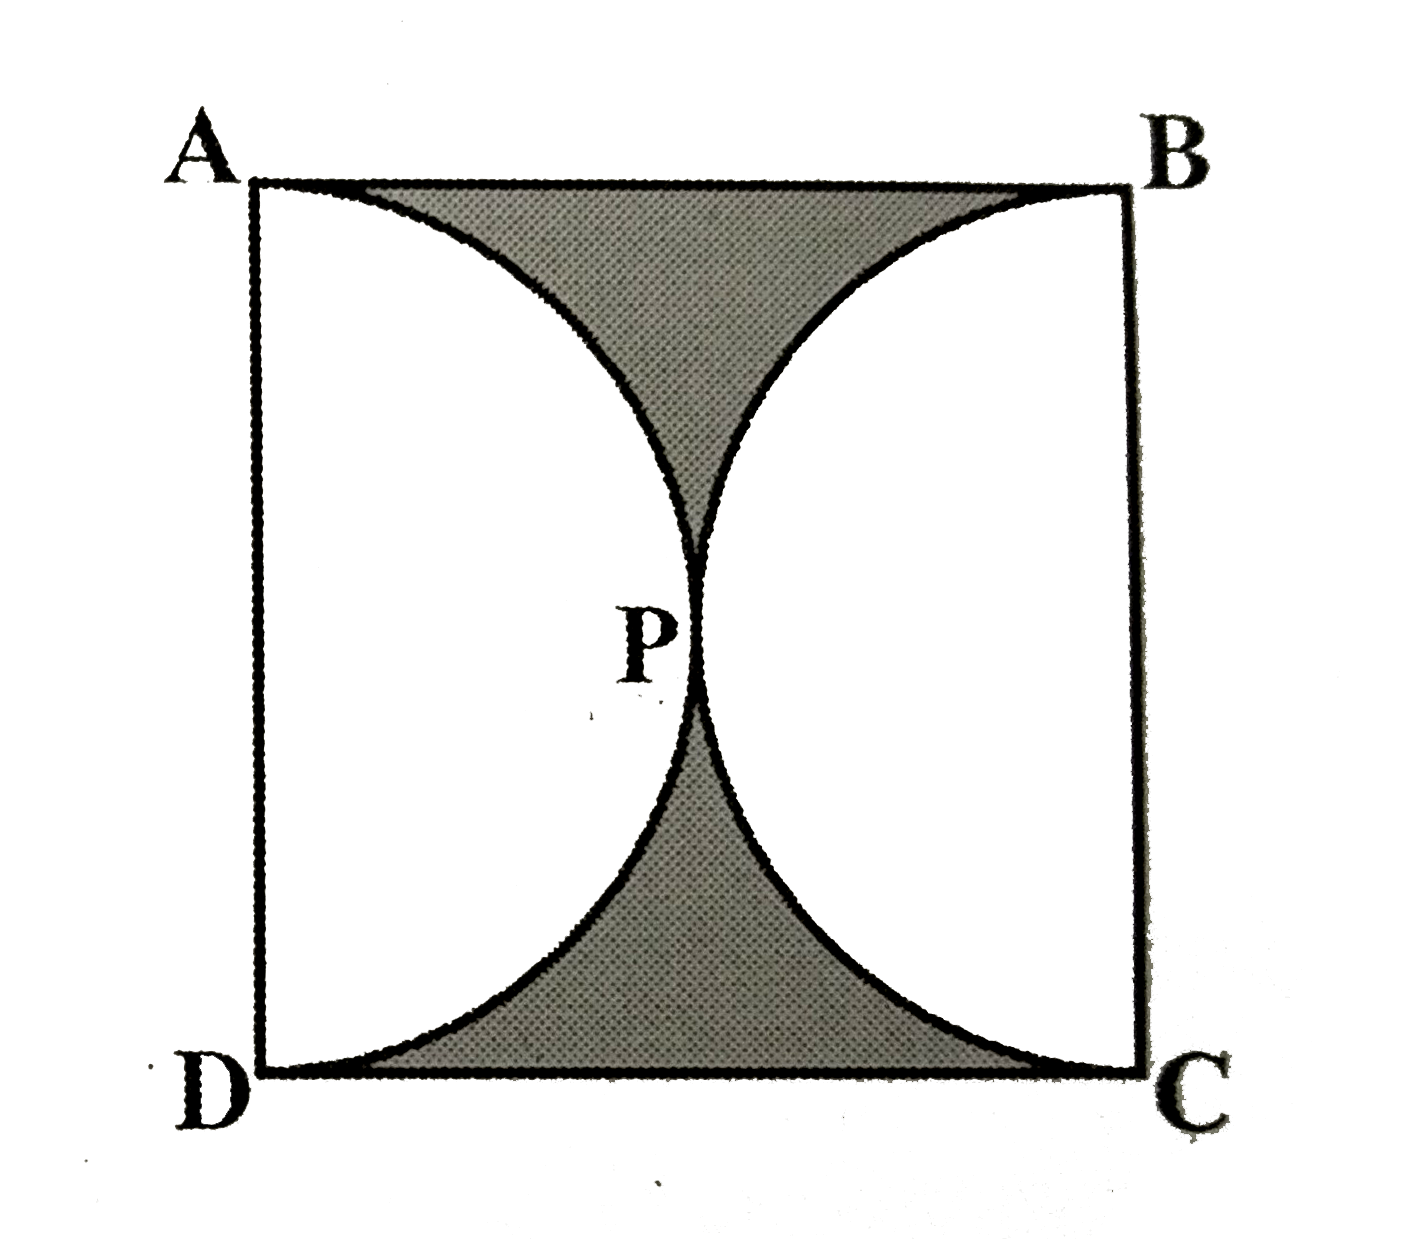 आकृति में छायांकित भाग का क्षेत्रफल ज्ञात कीजिए यदि ABCD भुजा 14 cm का एक वर्ग है तथा APD और BPC दो अर्धवृत्त हैं।